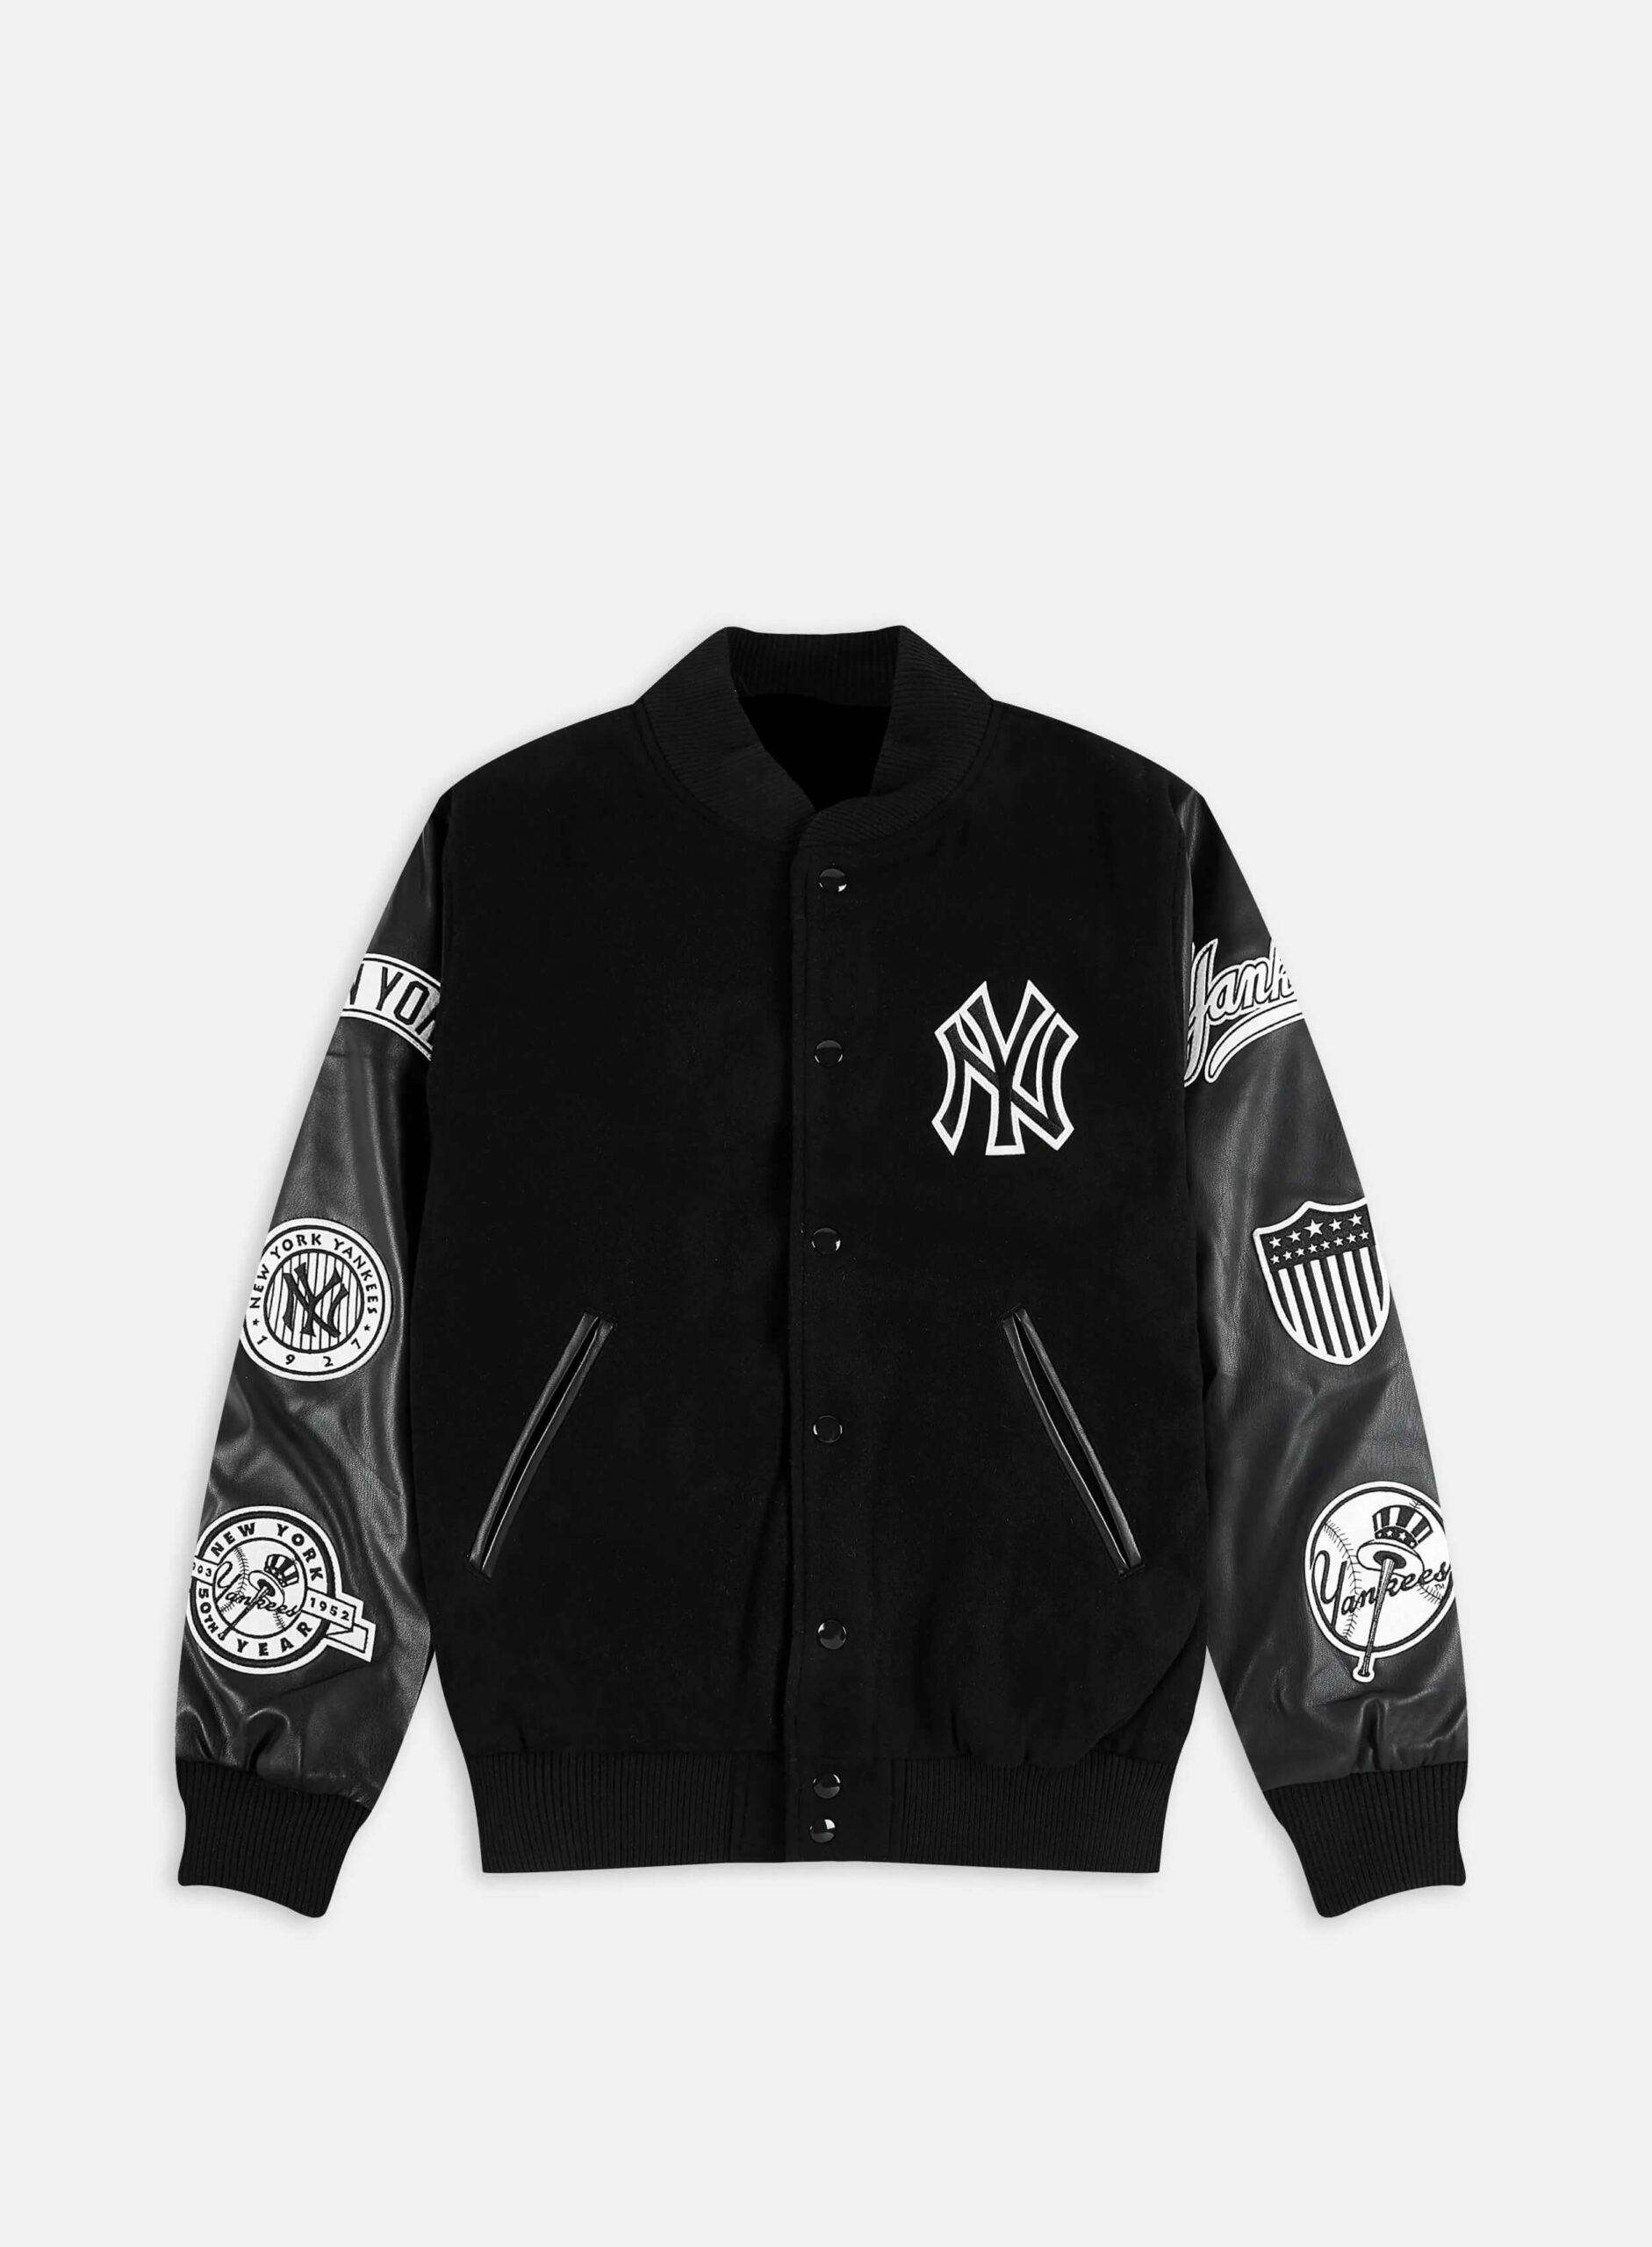 Maker of Jacket Fashion Jackets New Era MLB Heritage York Yankees Varsity